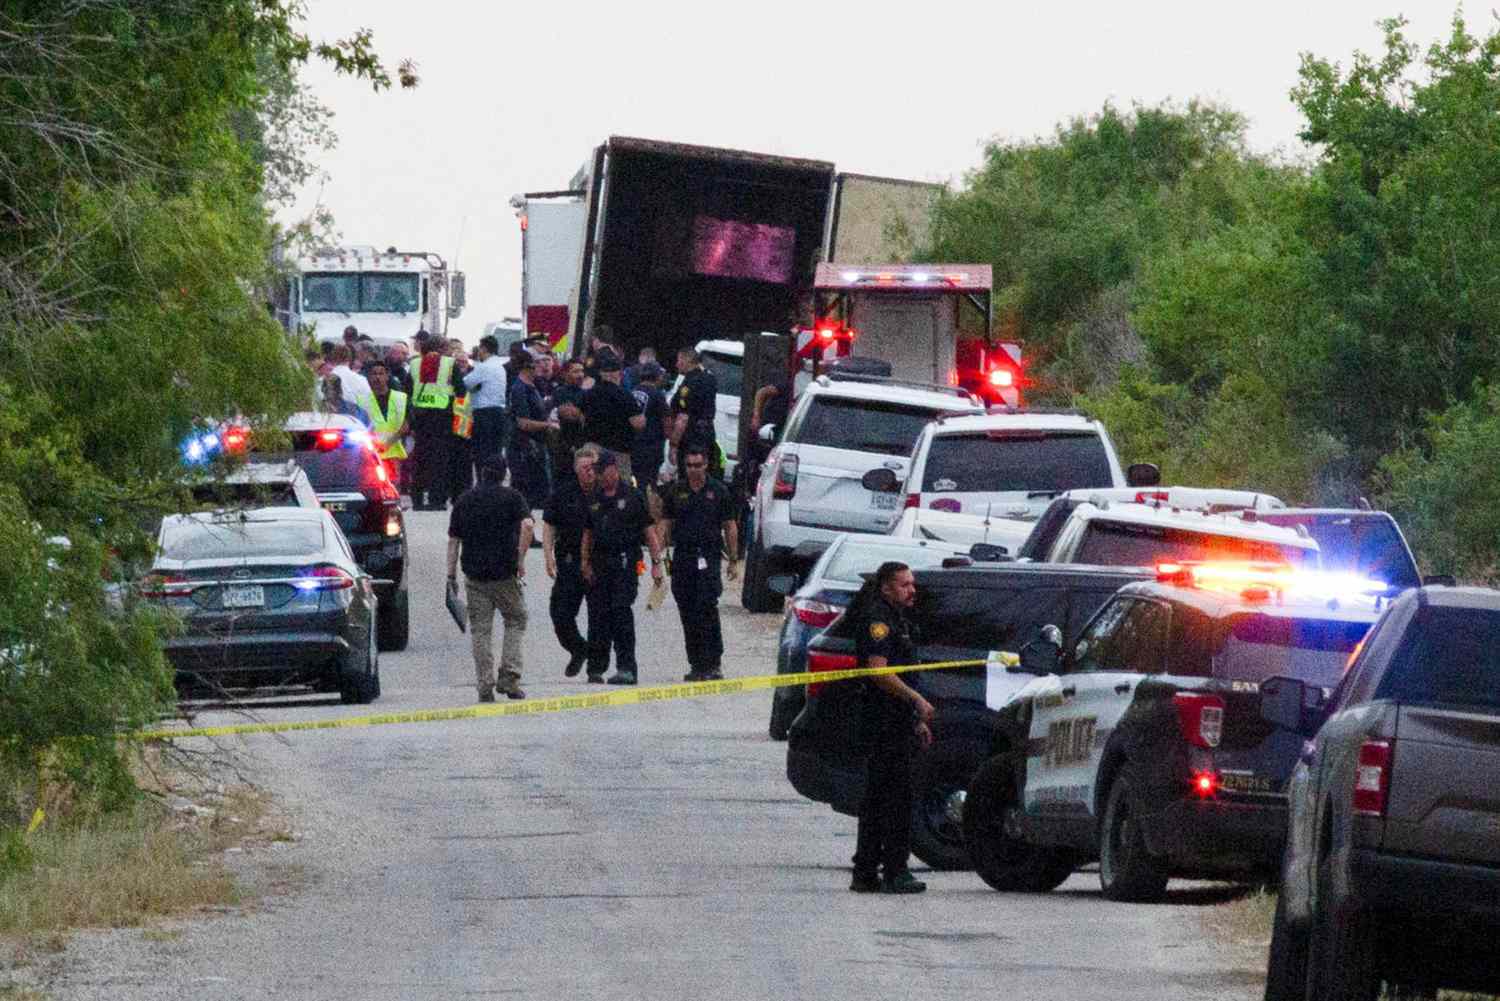 Migrants Found Dead In Truck In San Antonio